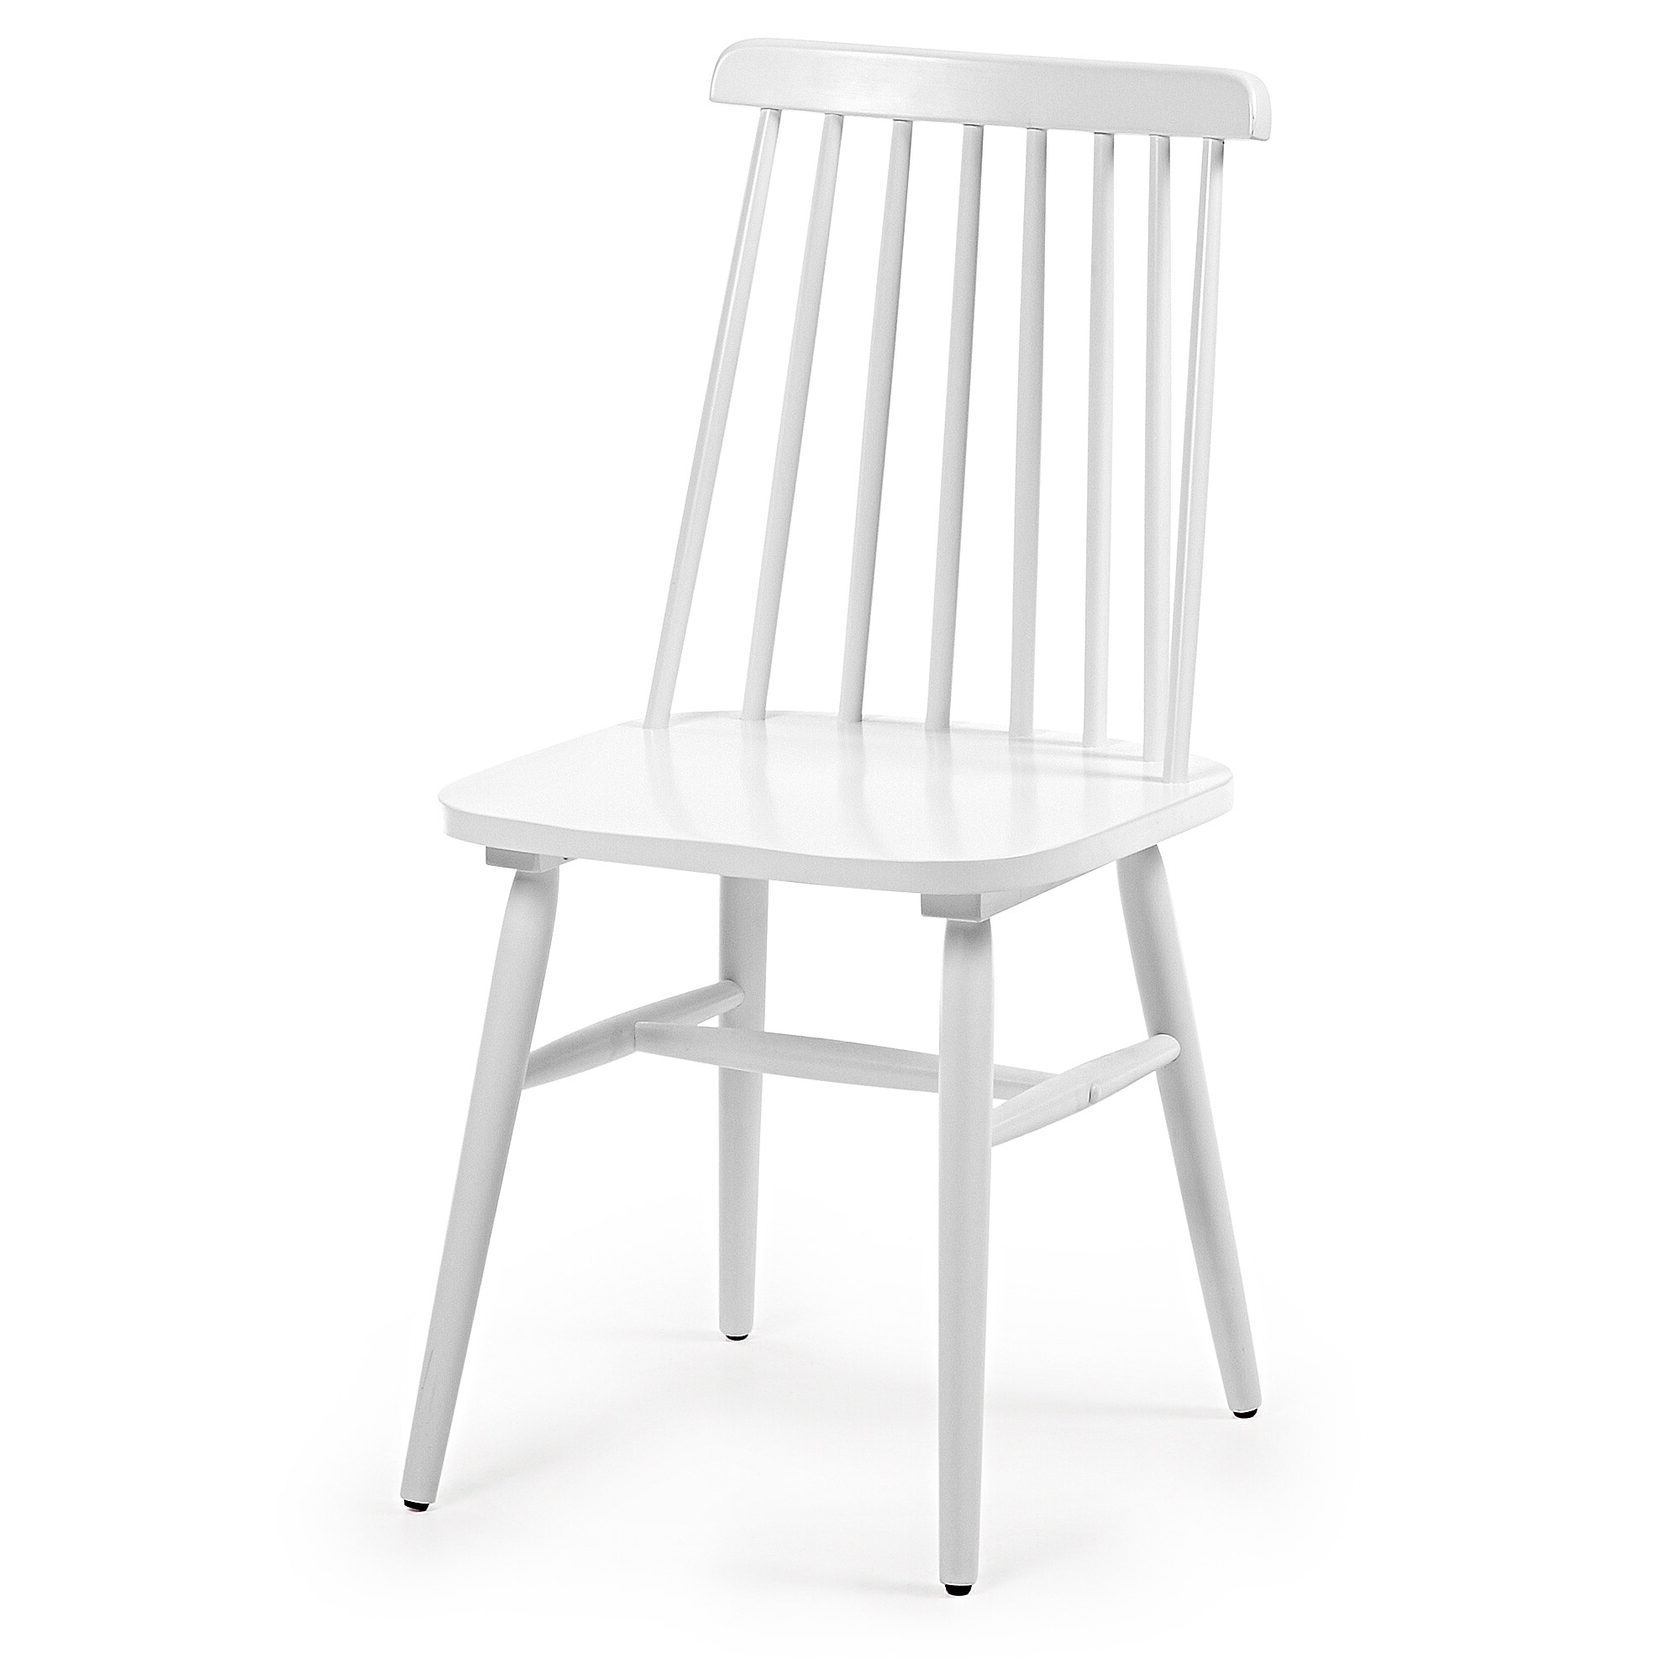 стулья для кухни деревянные белые со спинкой